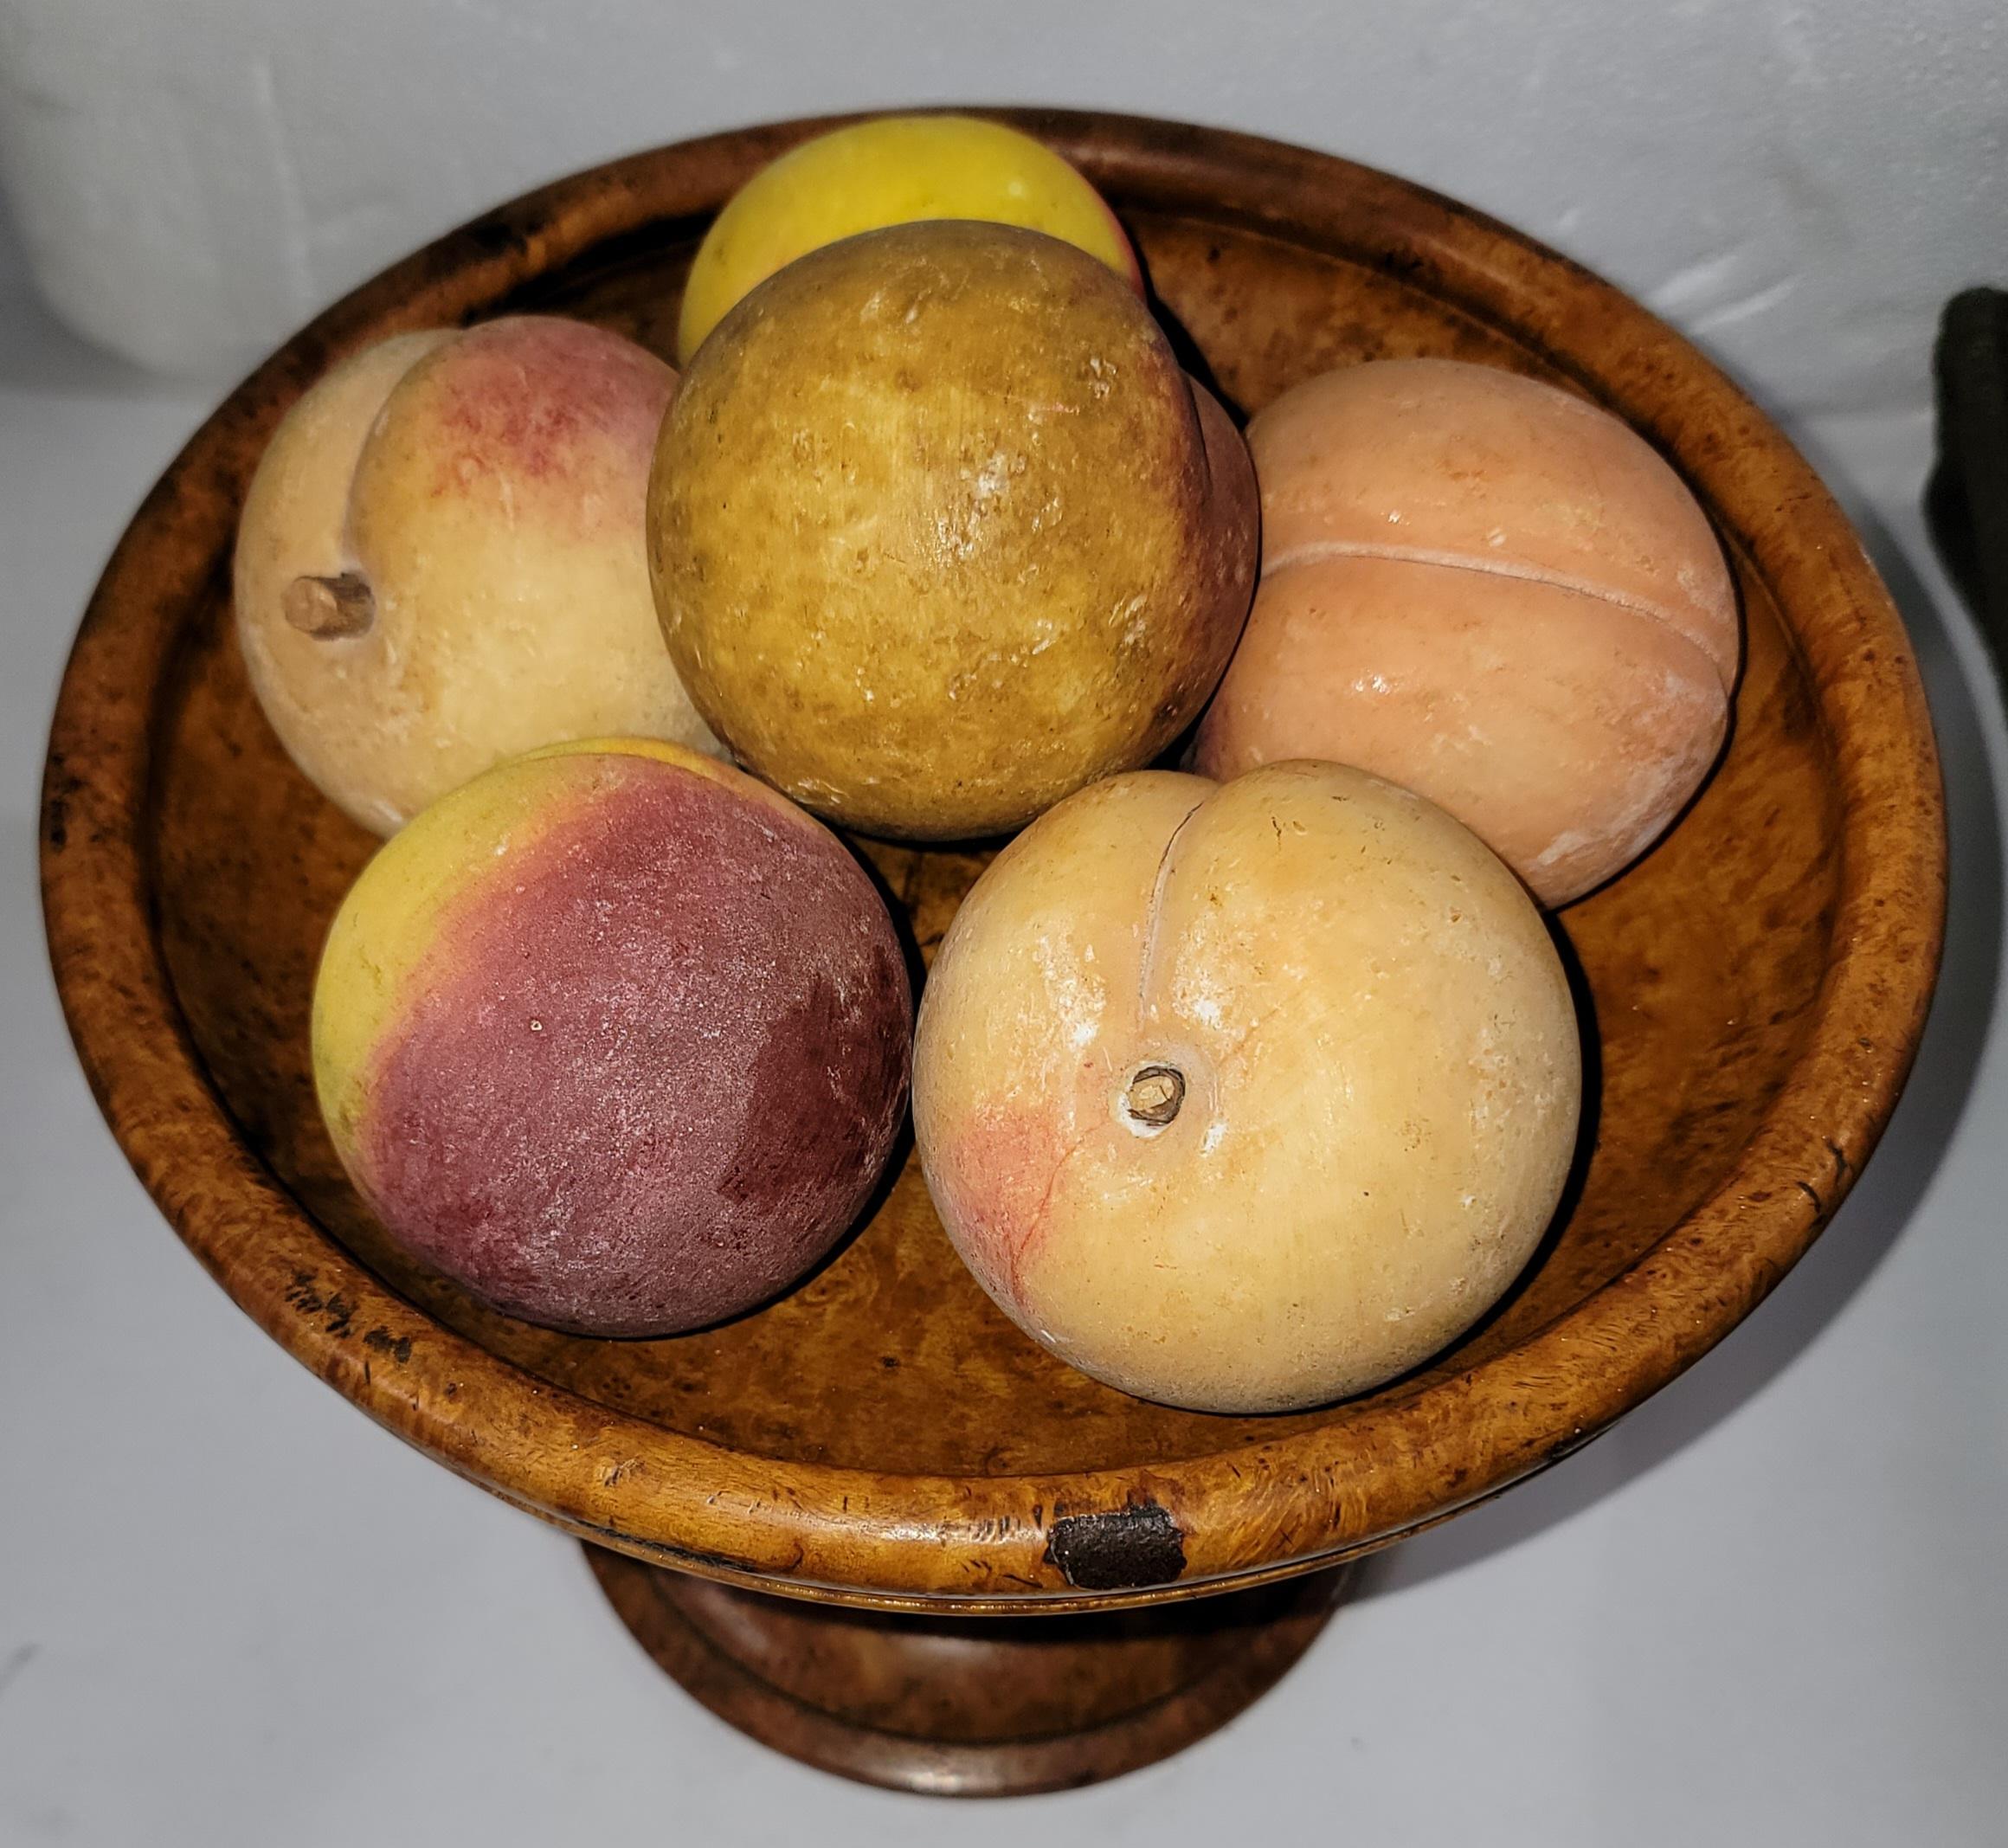 Jede Frucht misst zwischen 2,5 und 3 Zoll in der Kugelform. Es ist eine Sammlung von sieben Alabaster handbemalt Pfirsiche und ist in einem Wurzelholz oder Vogelaugenahorn Kompott in gutem Zustand.